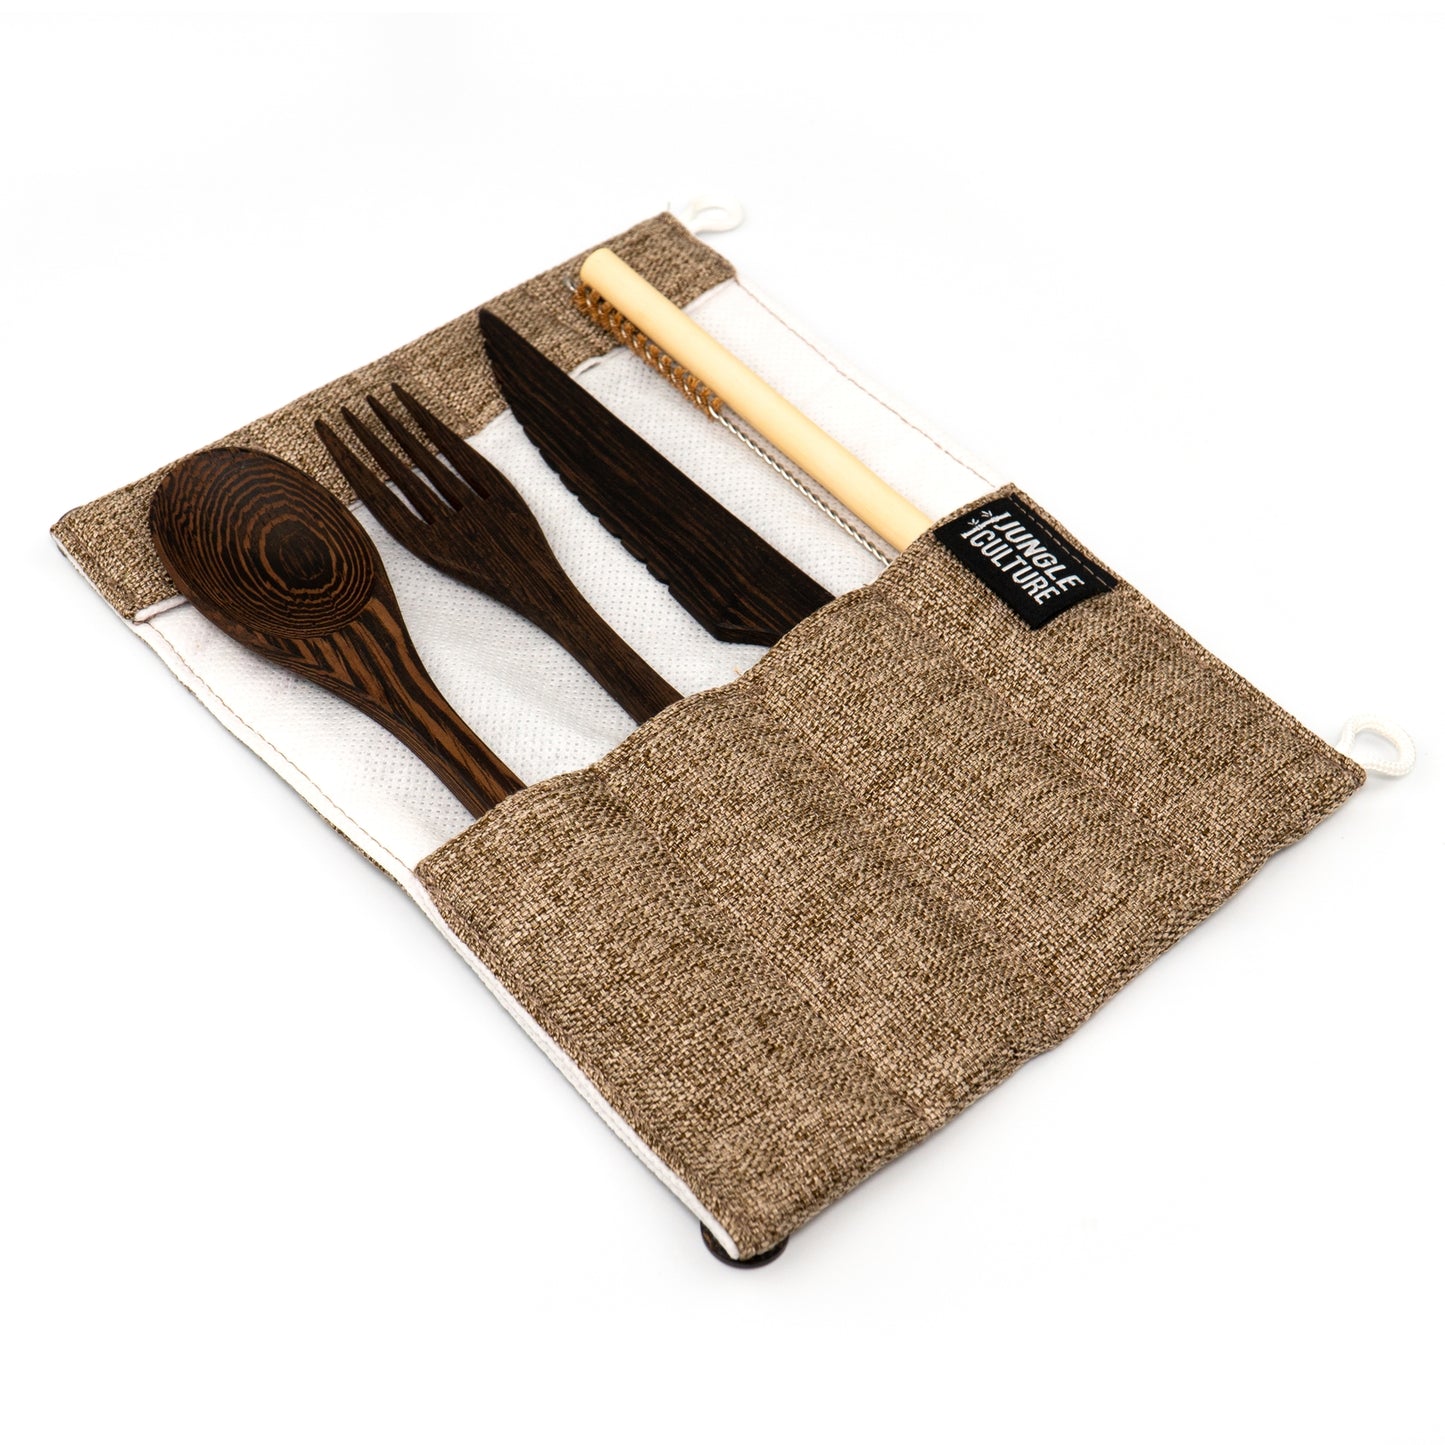 Handmade Wood Eco-Friendly Cutlery Set in Brown